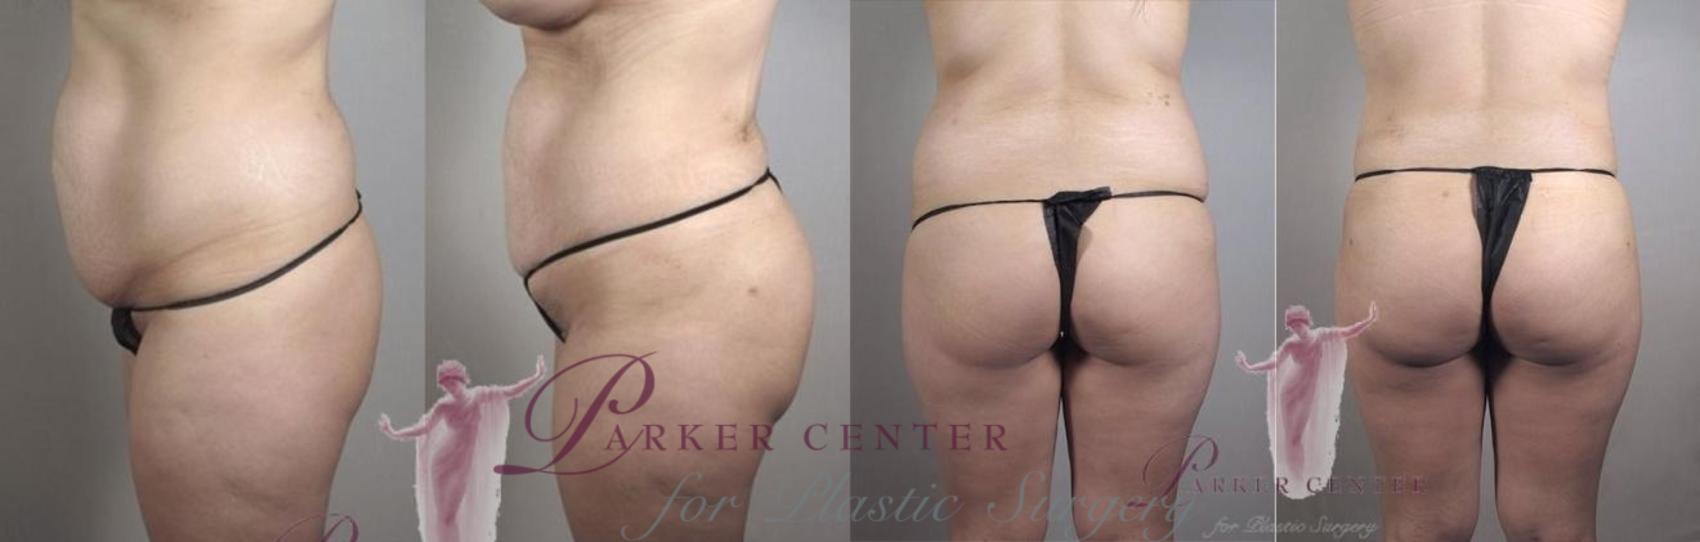 Brazilian Butt Lift Case 1152 Before & After Front | Paramus, NJ | Parker Center for Plastic Surgery